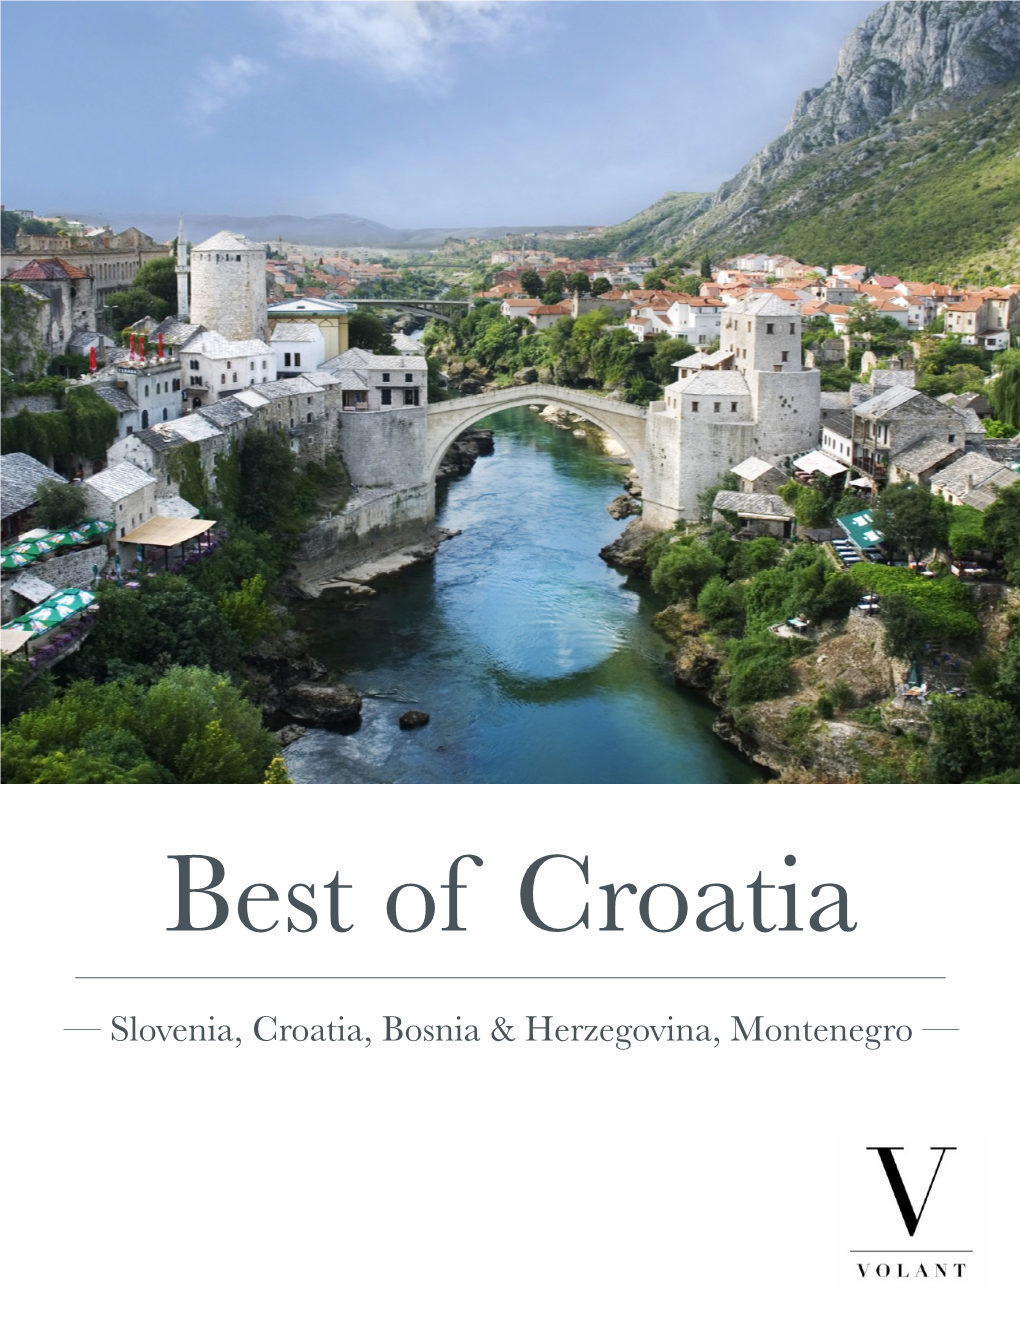 Best of Croatia & Slovenia